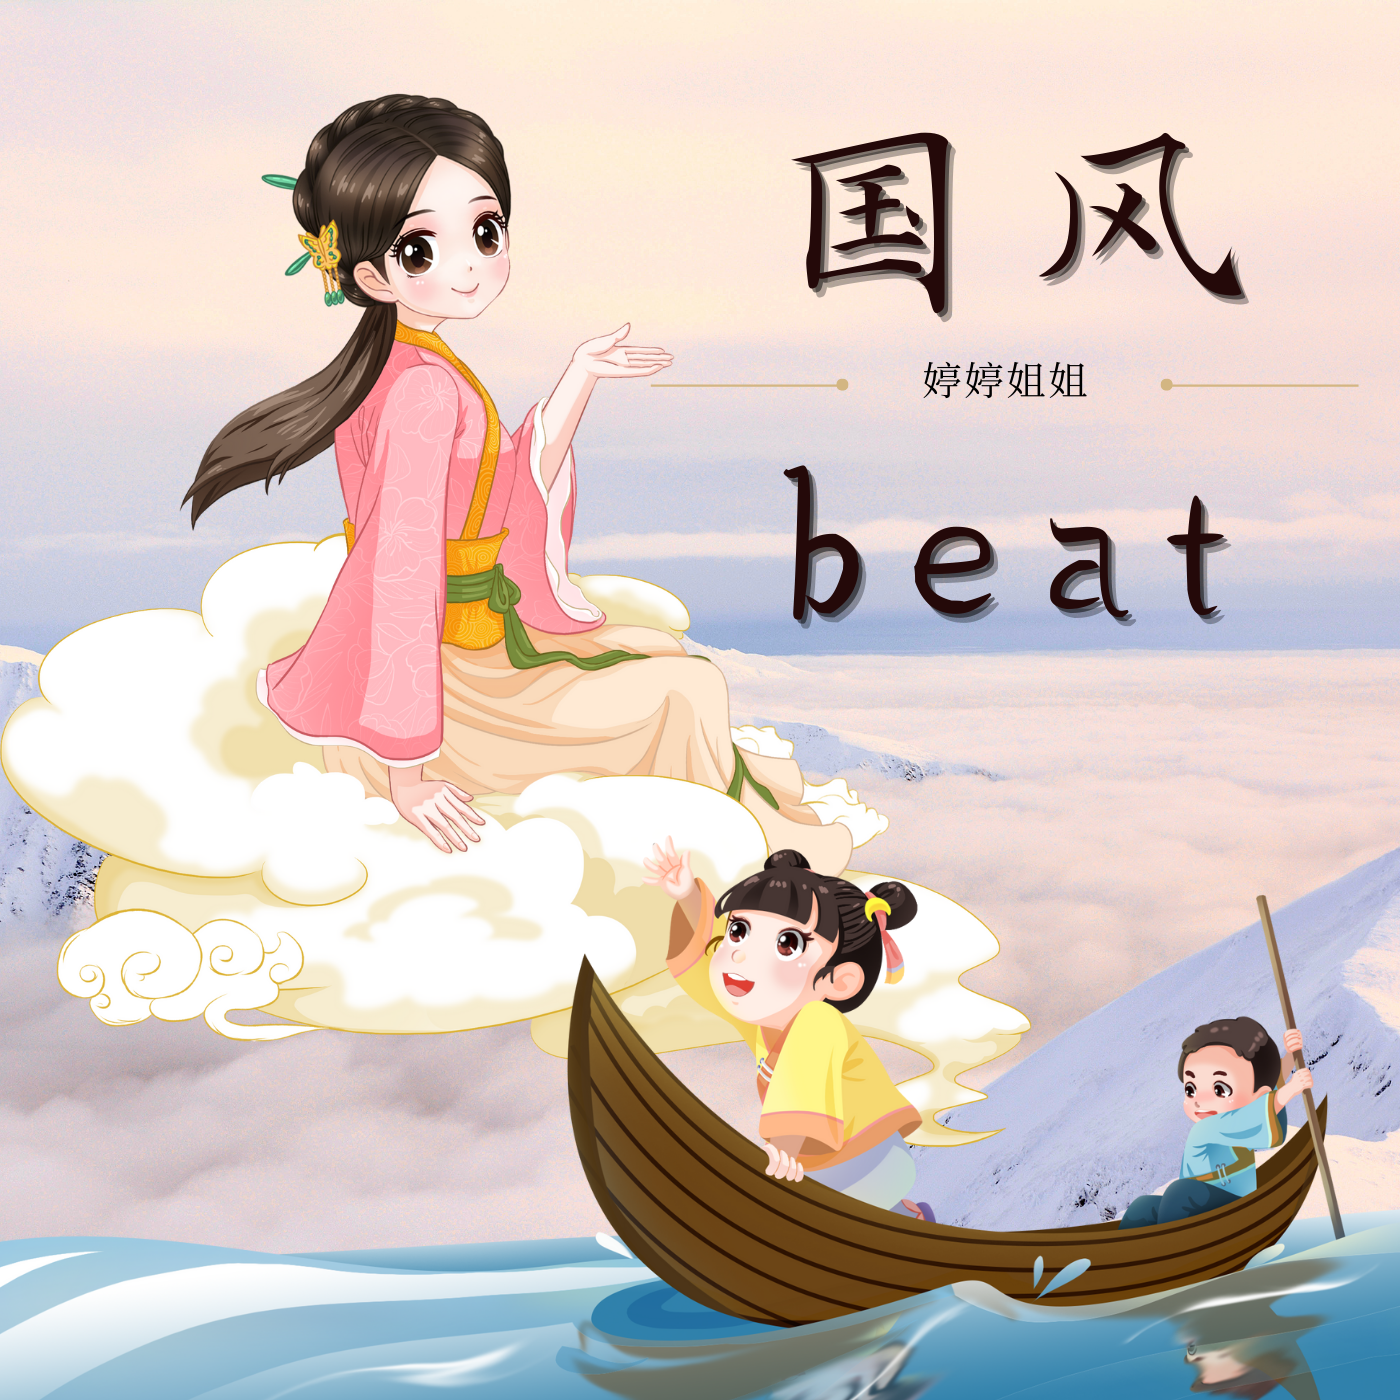 婷婷姐姐 - “传统节日”-中国风/Chinese type beat-BPM93